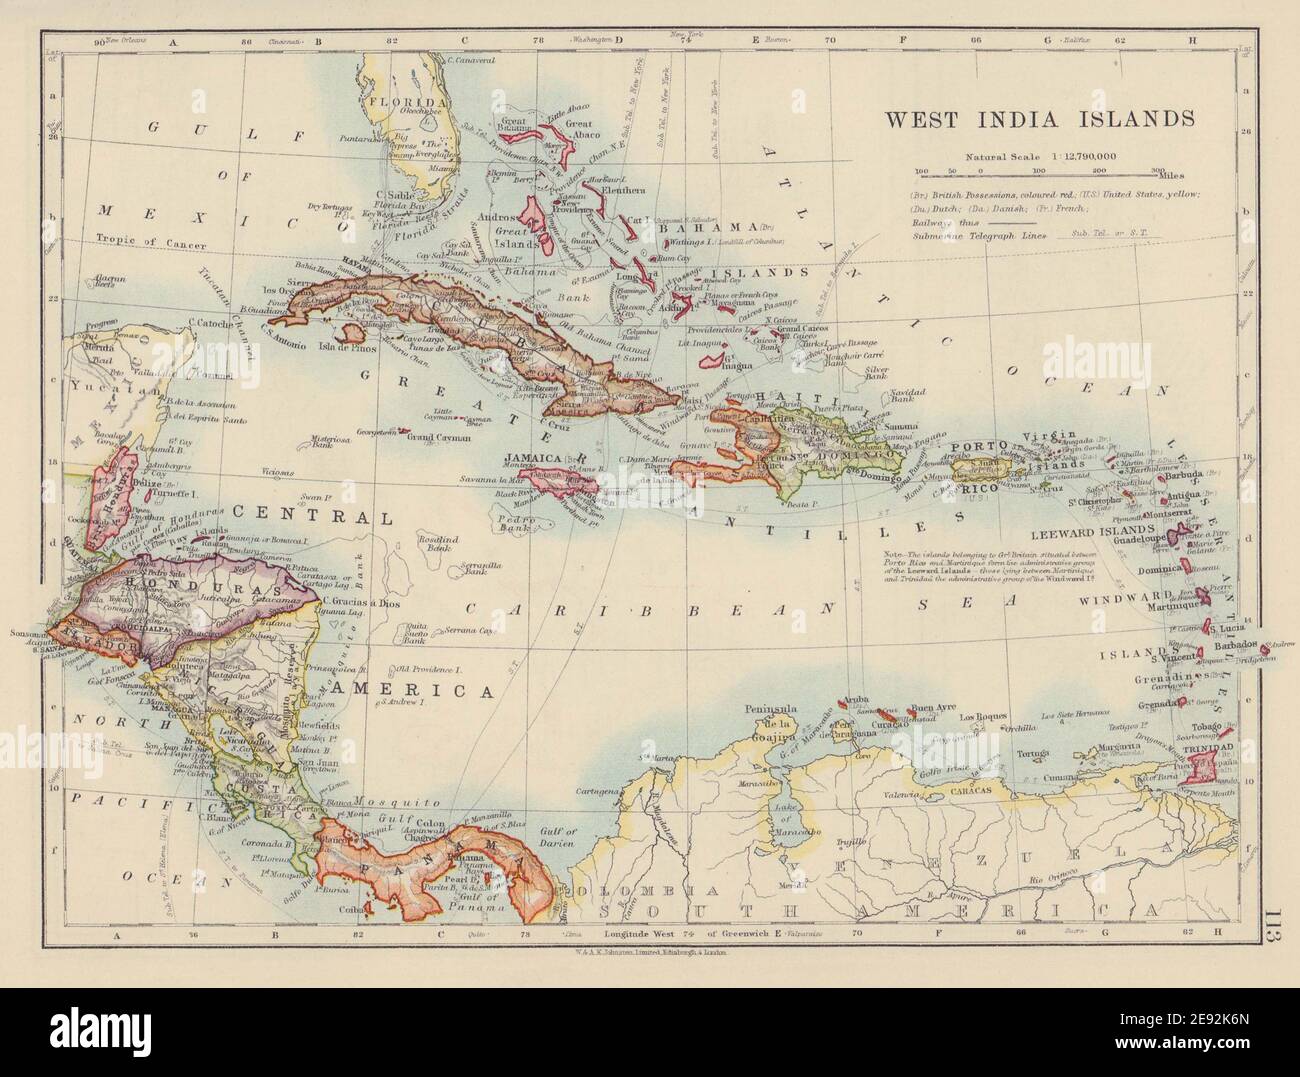 WEST INDIA ISLANDS. Caribbean Bahamas Windward/Leeward Is. JOHNSTON 1910 map Stock Photo